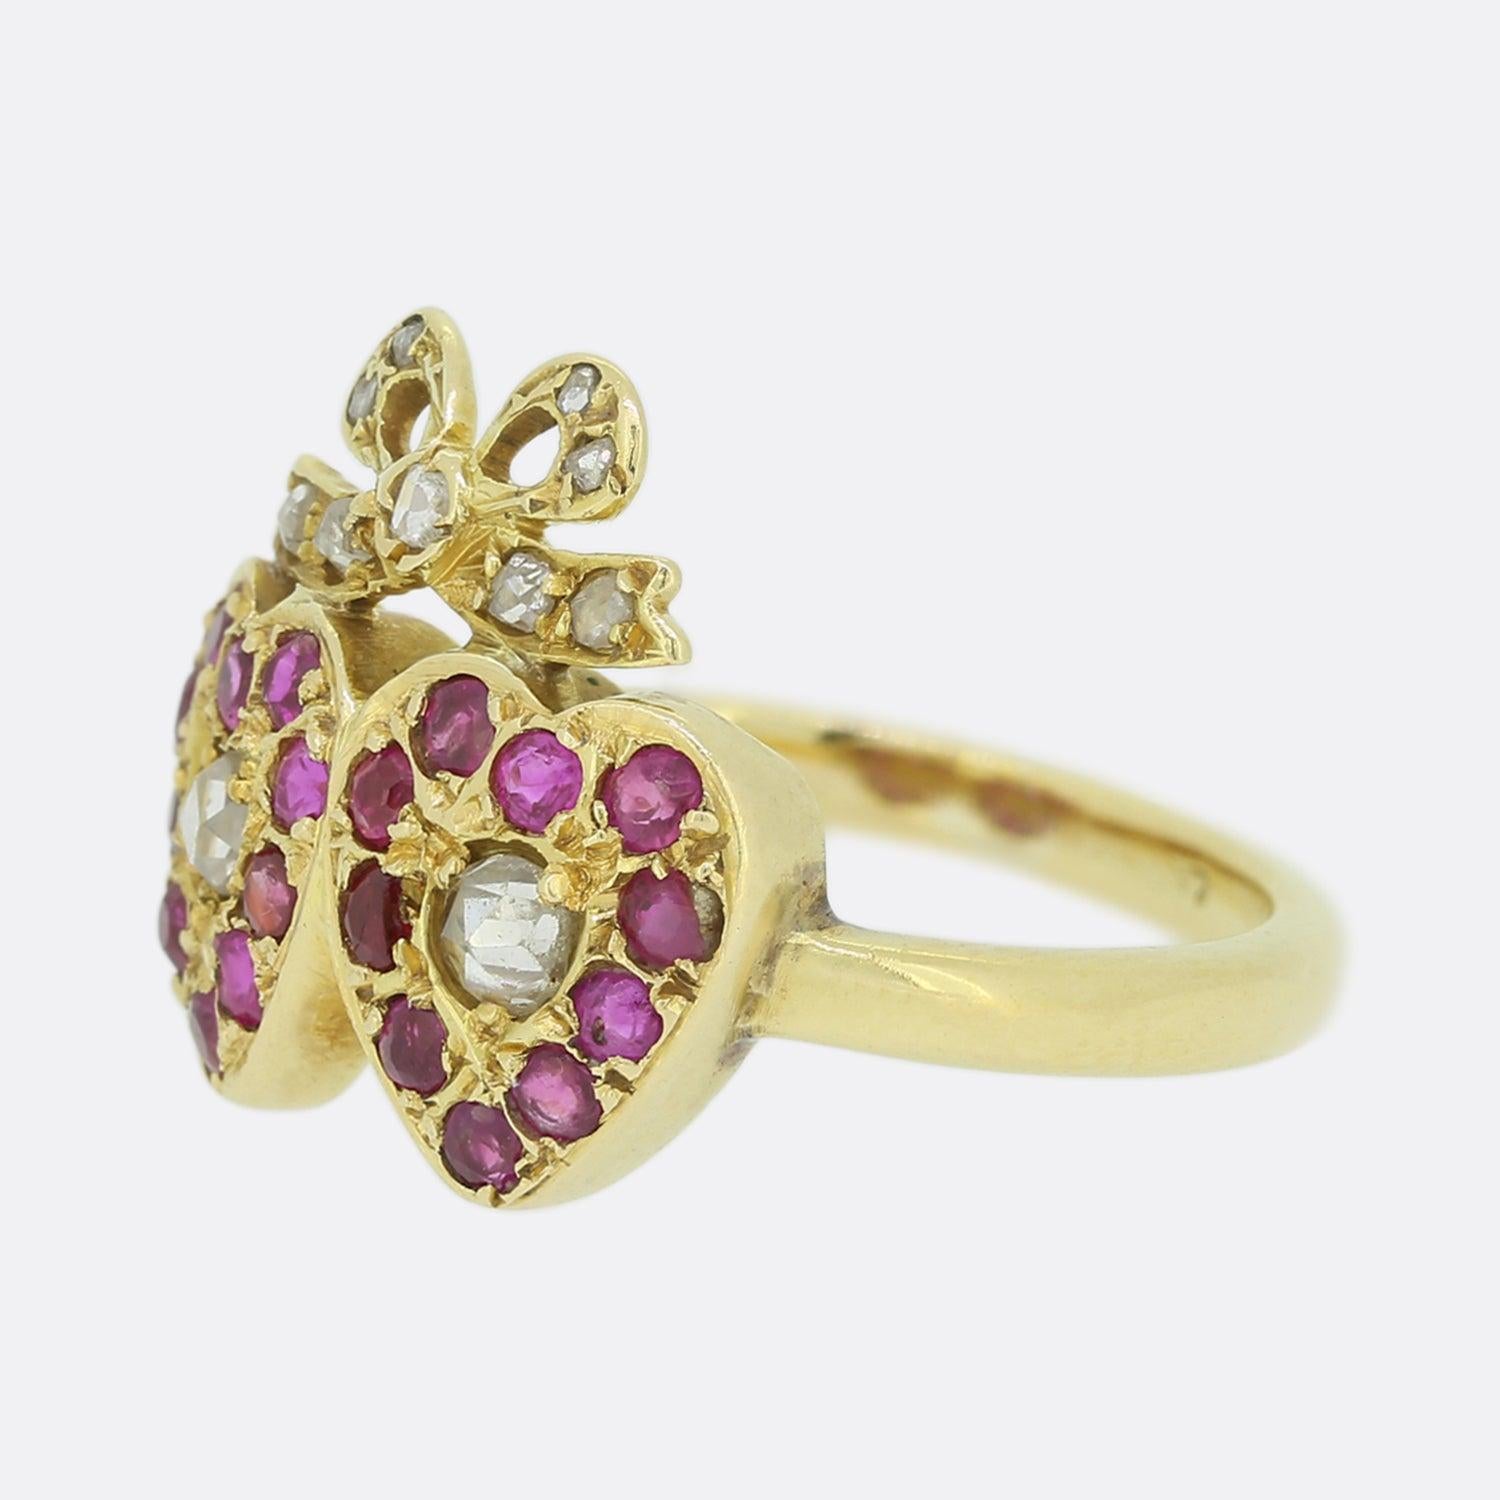 Dieser Ring aus 18 Karat Gelbgold stammt aus der Edwardianischen Ära. Die Mitte jedes Herzens ist mit einem Diamanten im Rosenschliff besetzt, der von roten Rubinen umrahmt wird. Oberhalb der Herzen befindet sich eine diamantbesetzte